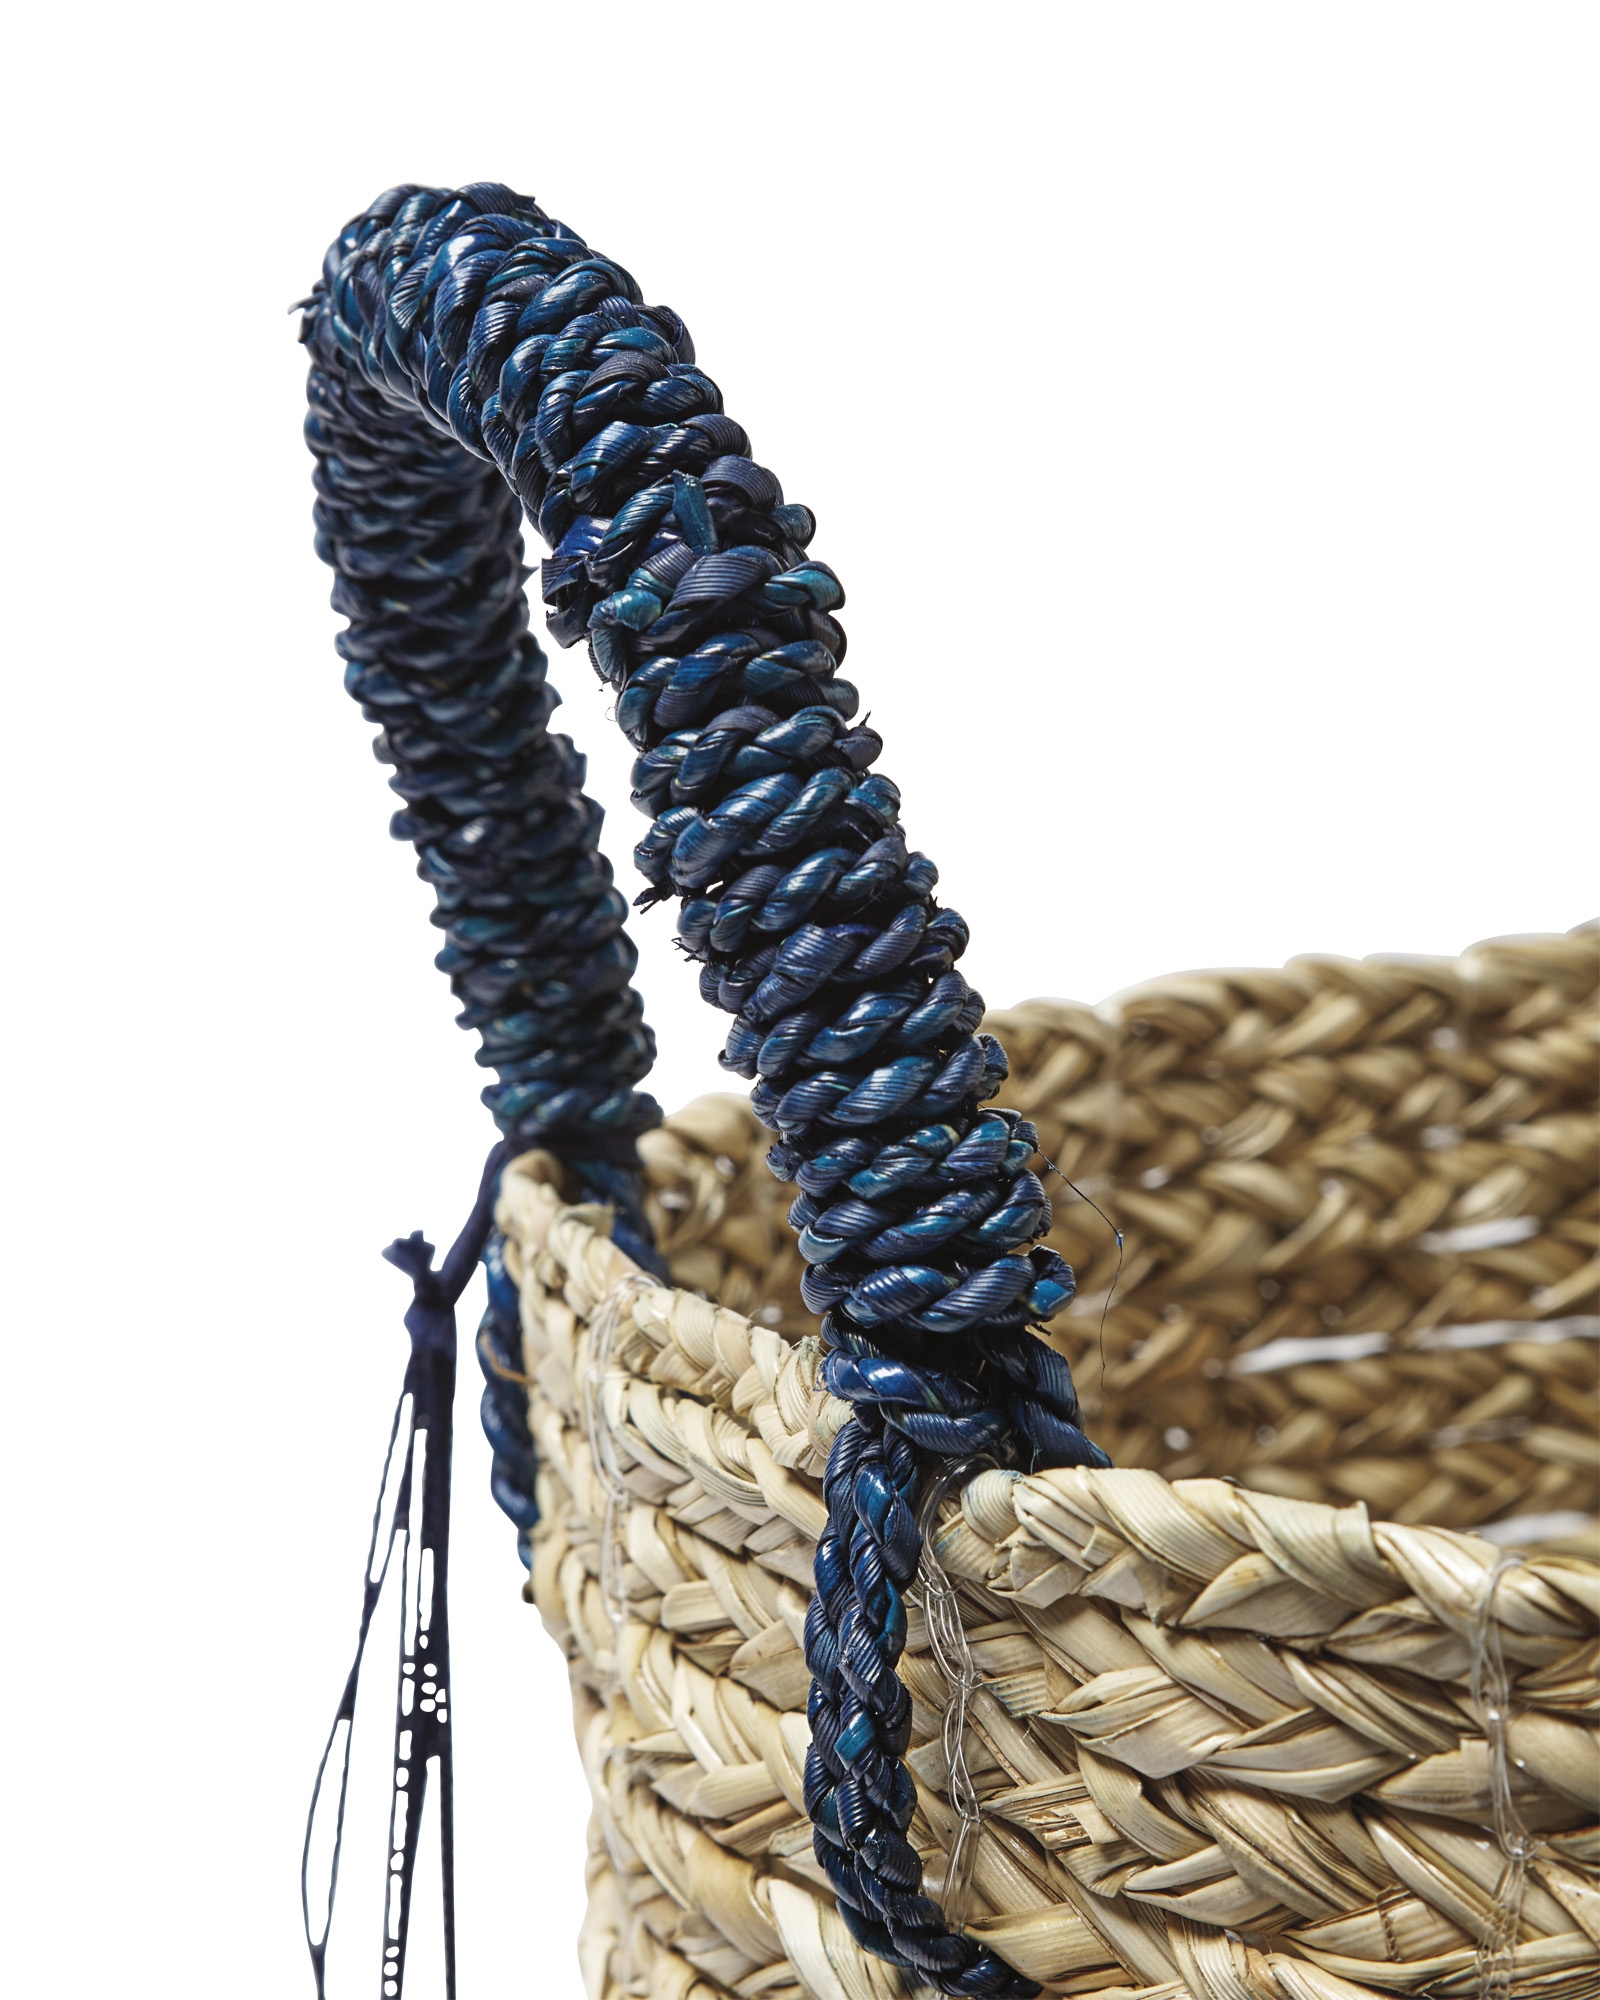 Tassel Basket - Image 1